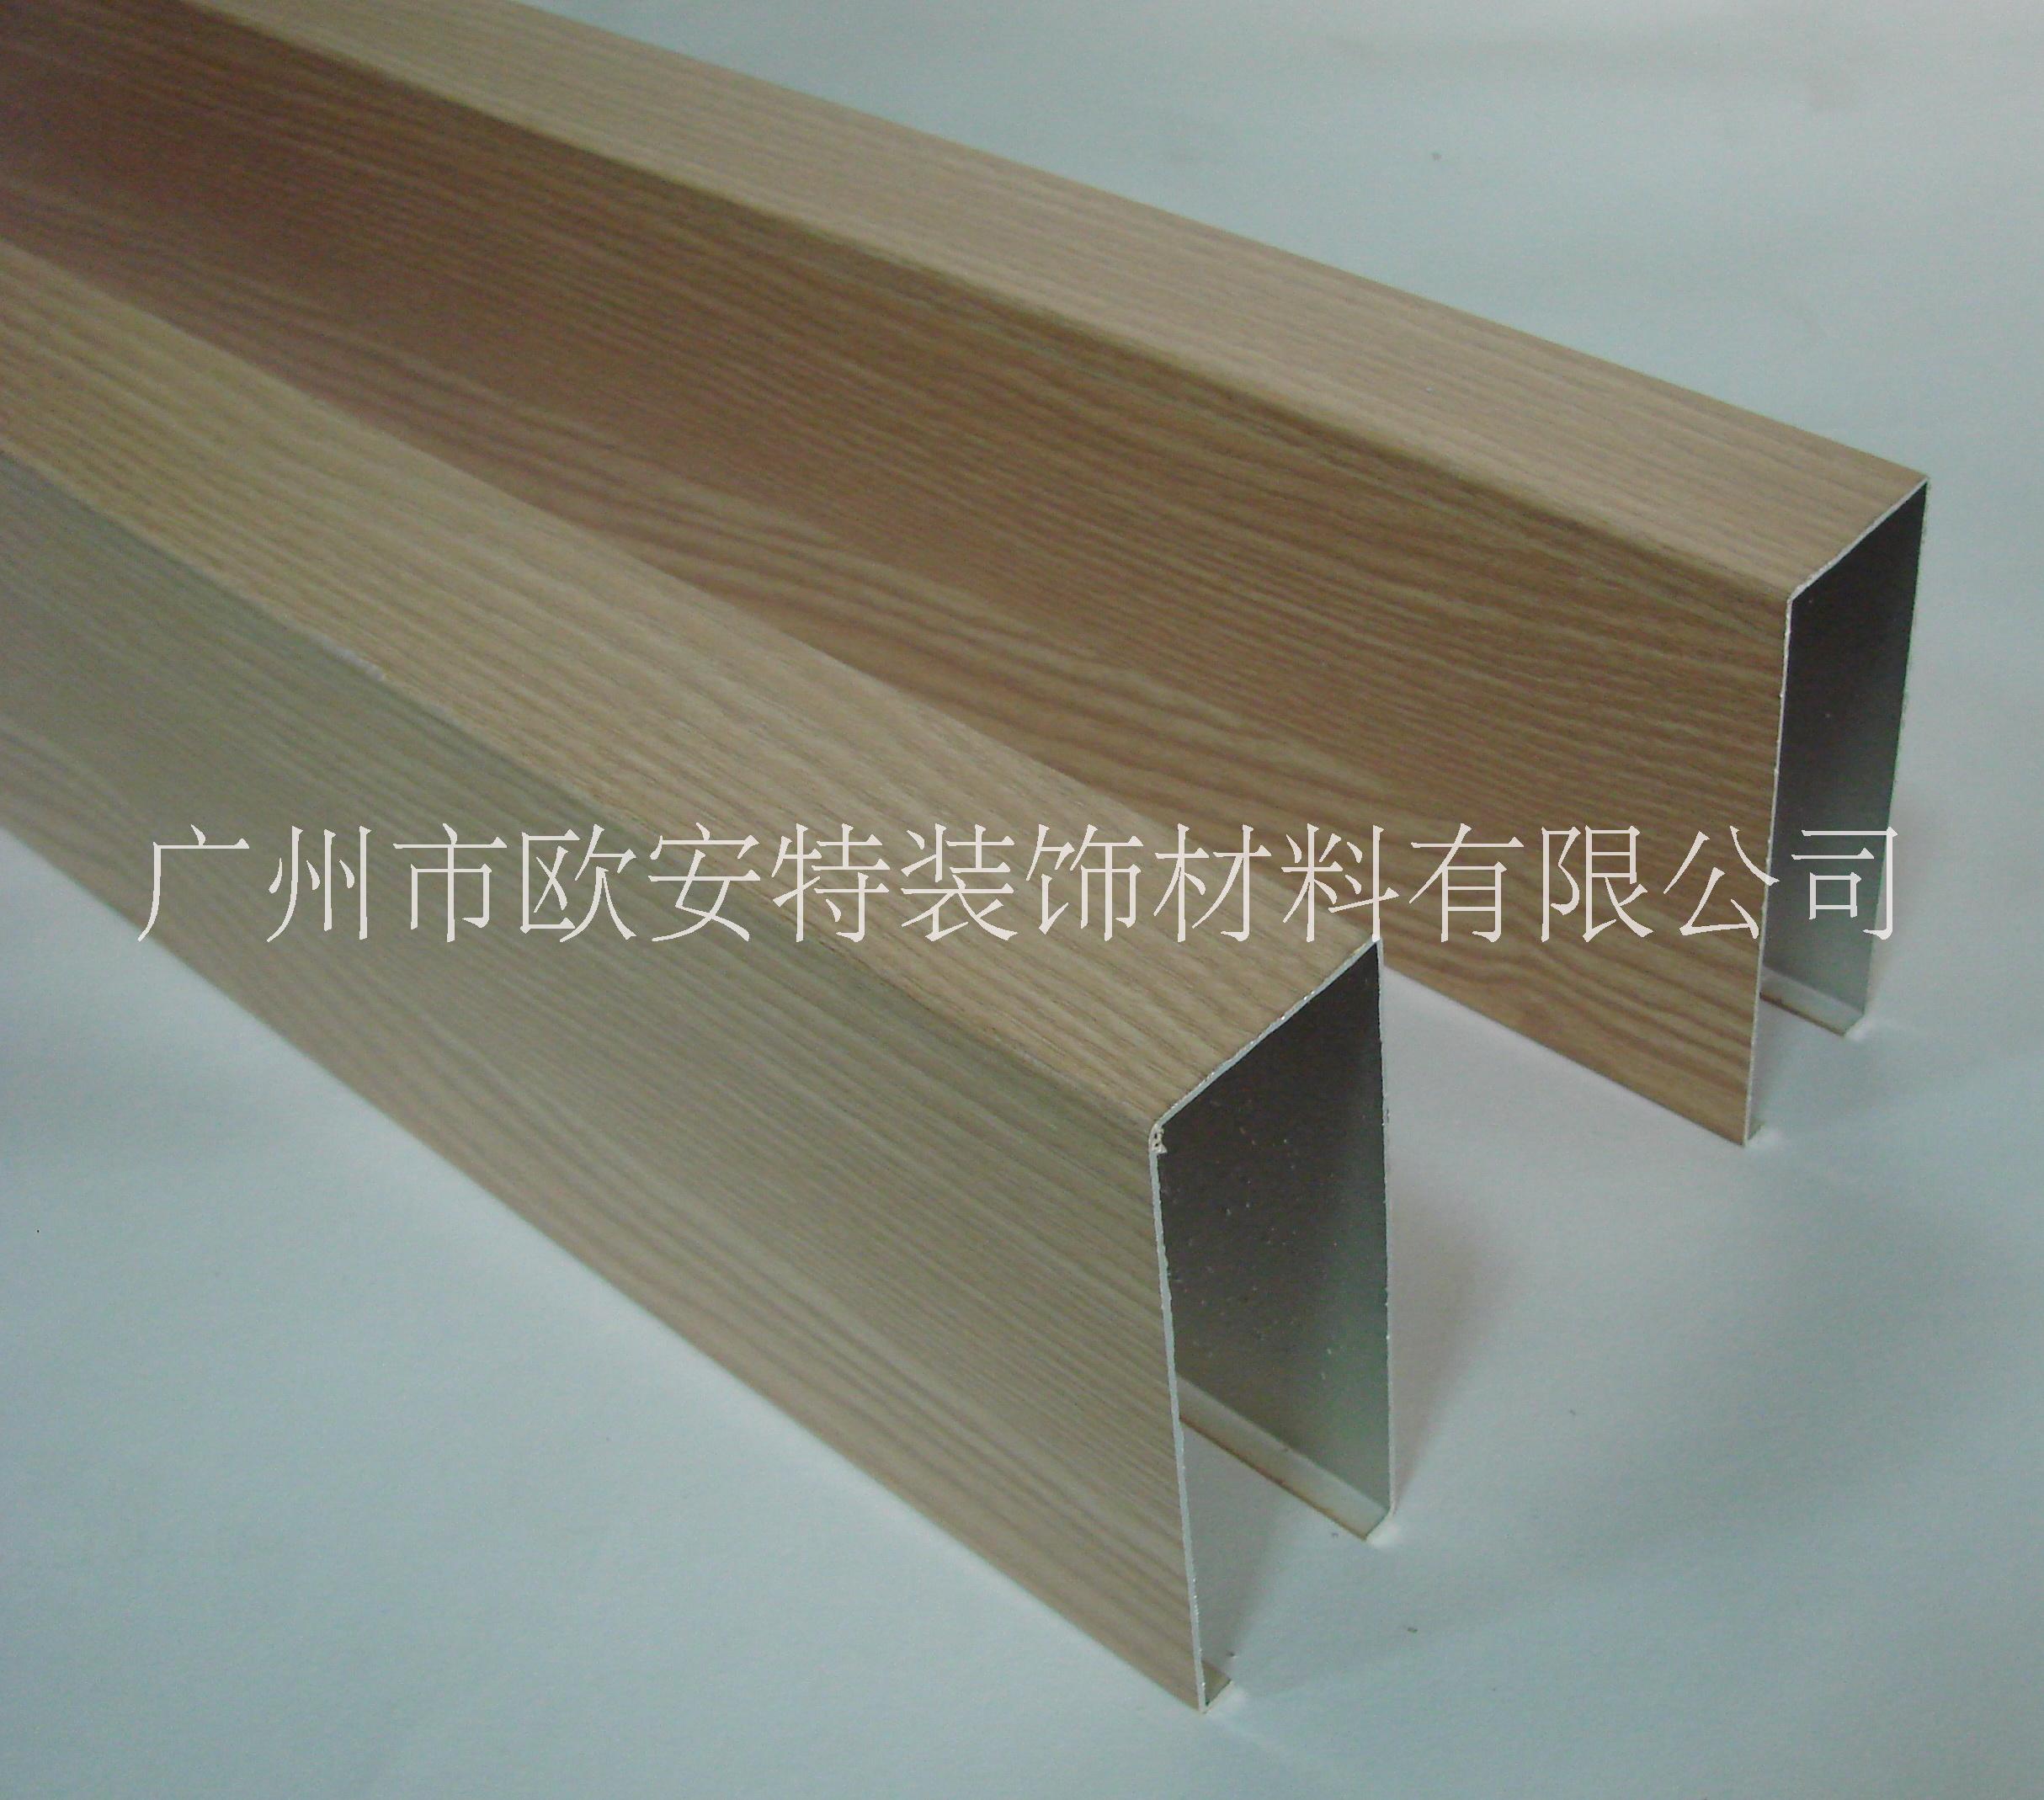 广州市木纹铝方通厂家